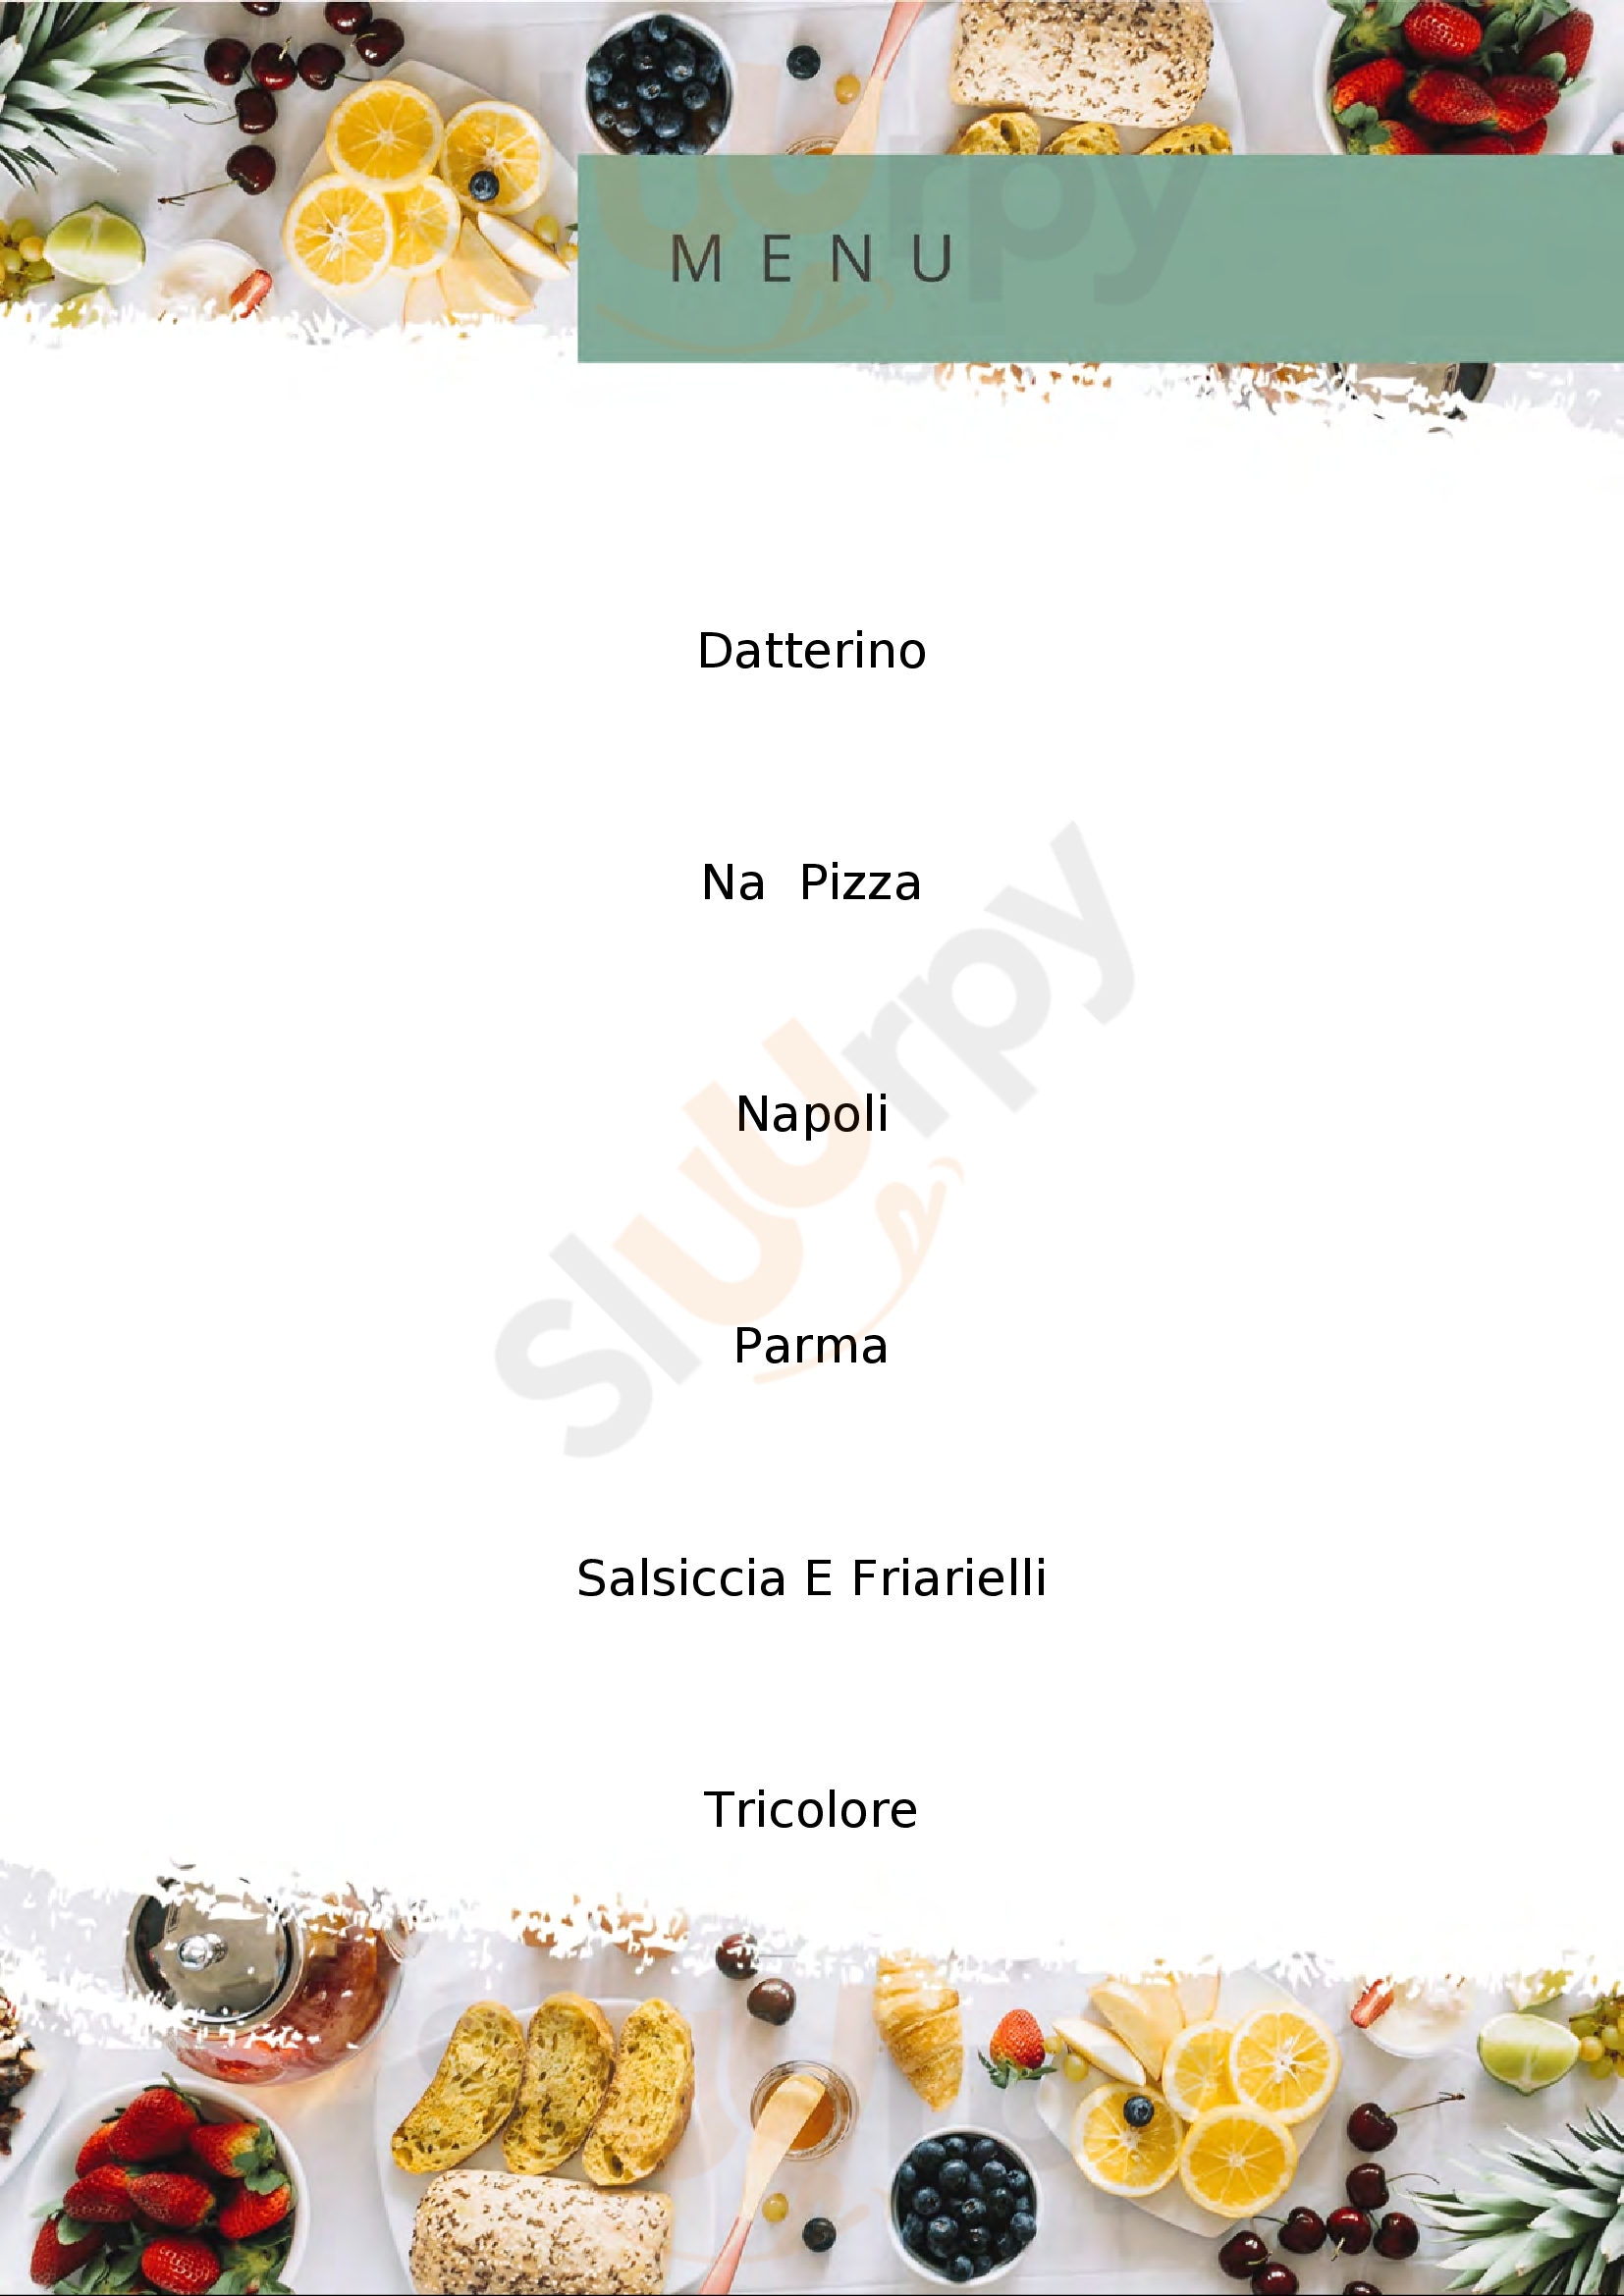 Na' Pizza 2 Reggio Emilia menù 1 pagina